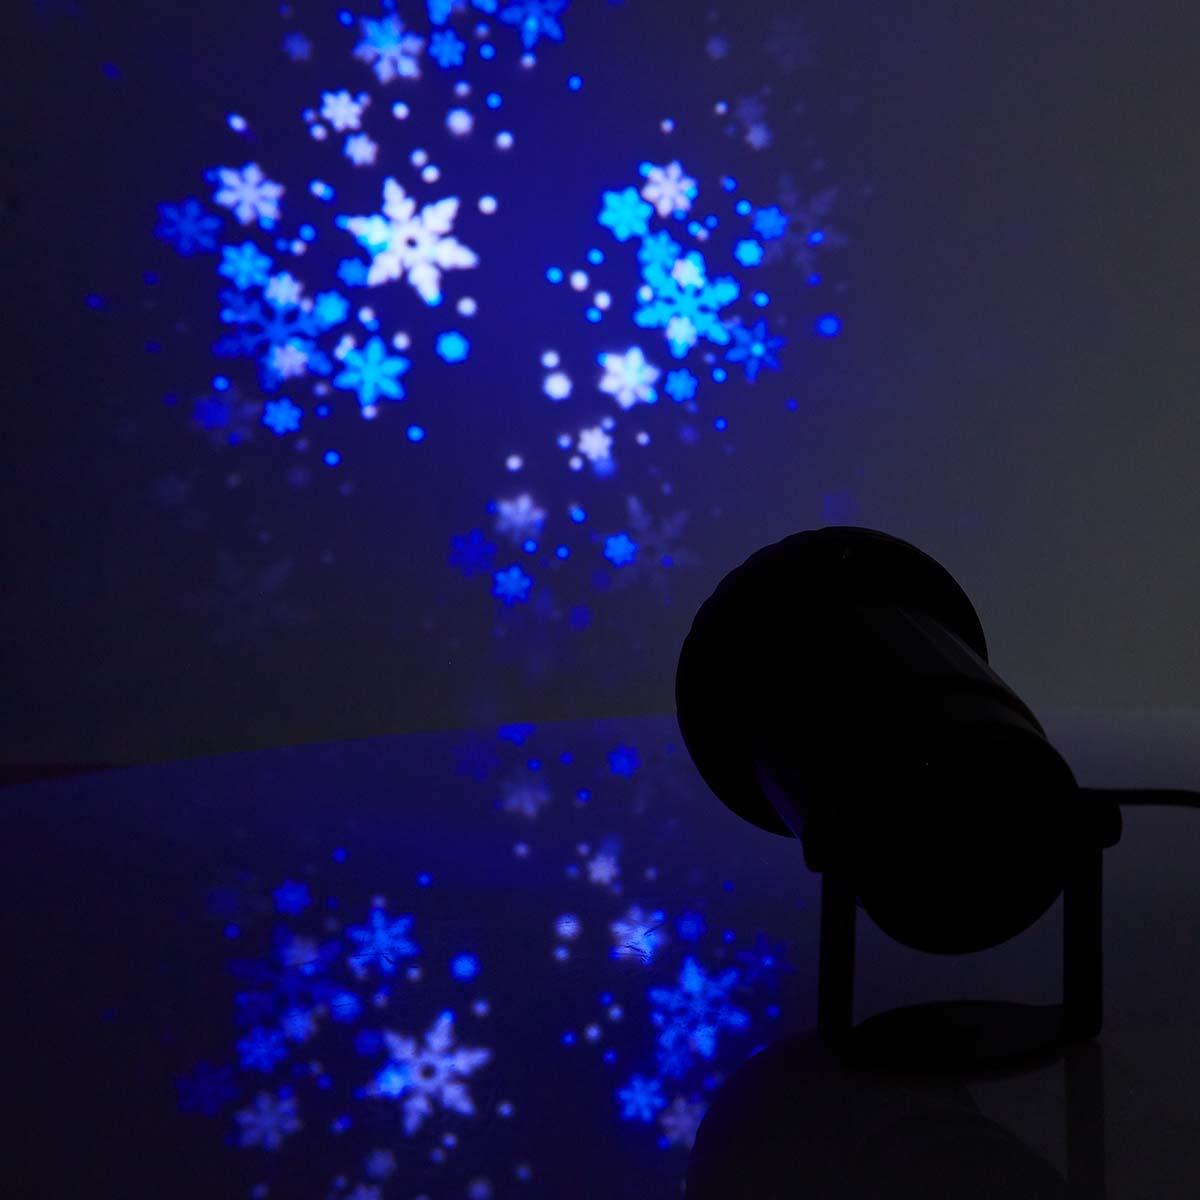 Projecteur à led pour flocons de neige - cristaux de glace blancs et bleus - intérieur ou extérieur